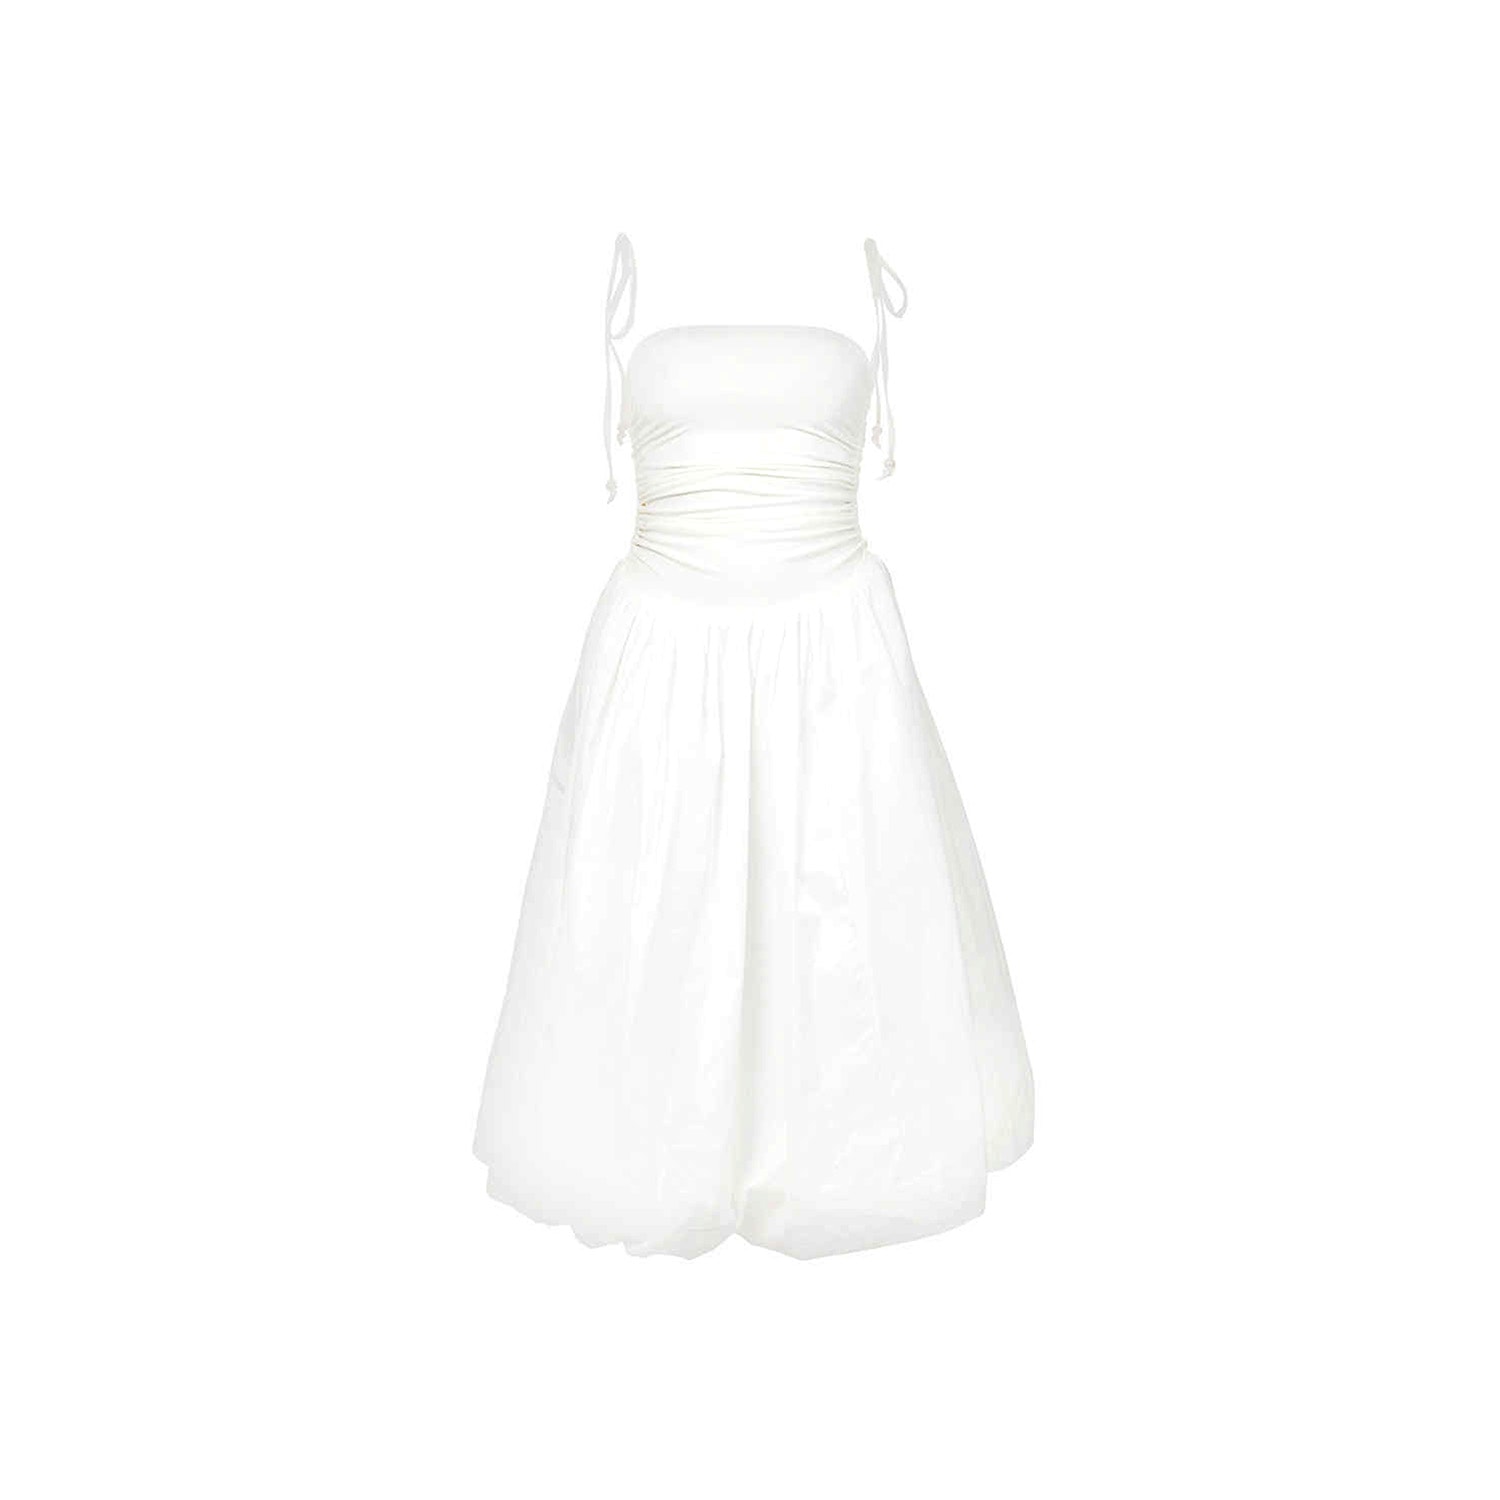 Amy Lynn Women's Alexa White Puffball Dress